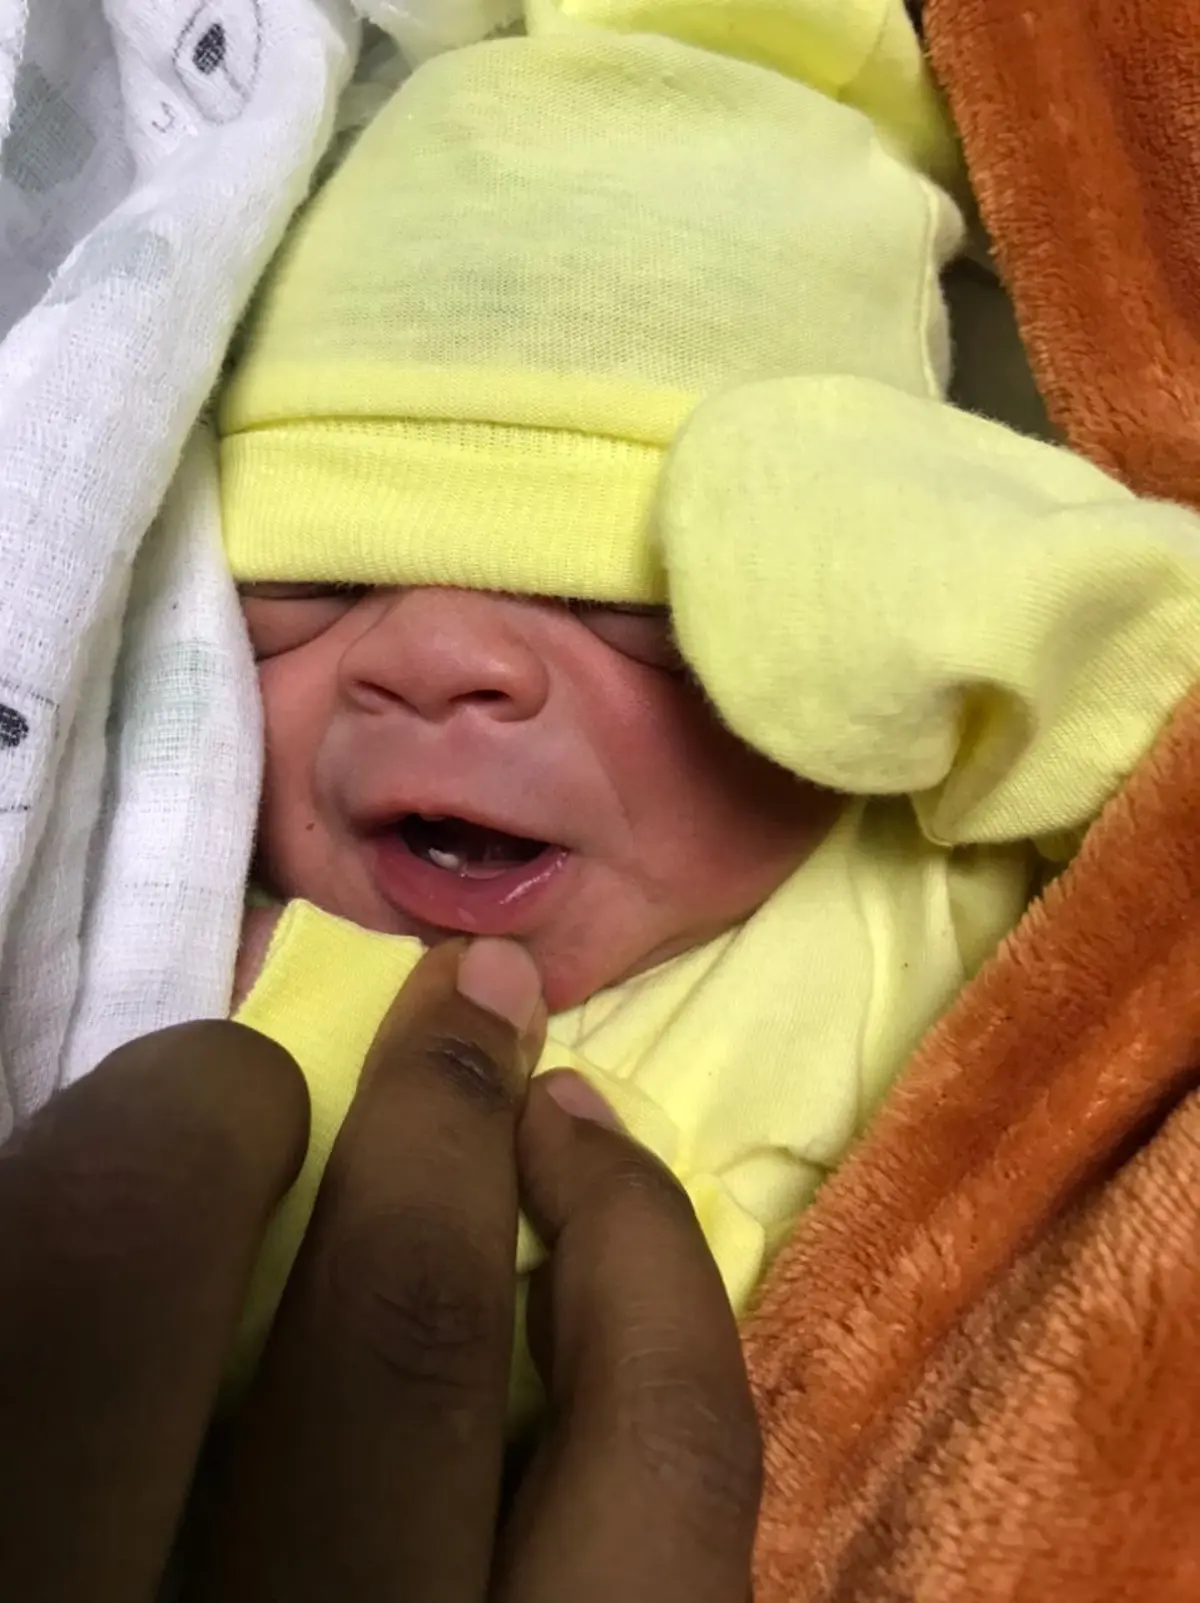 ATENCION: Nace niño con un diente en hospital de Cotuí